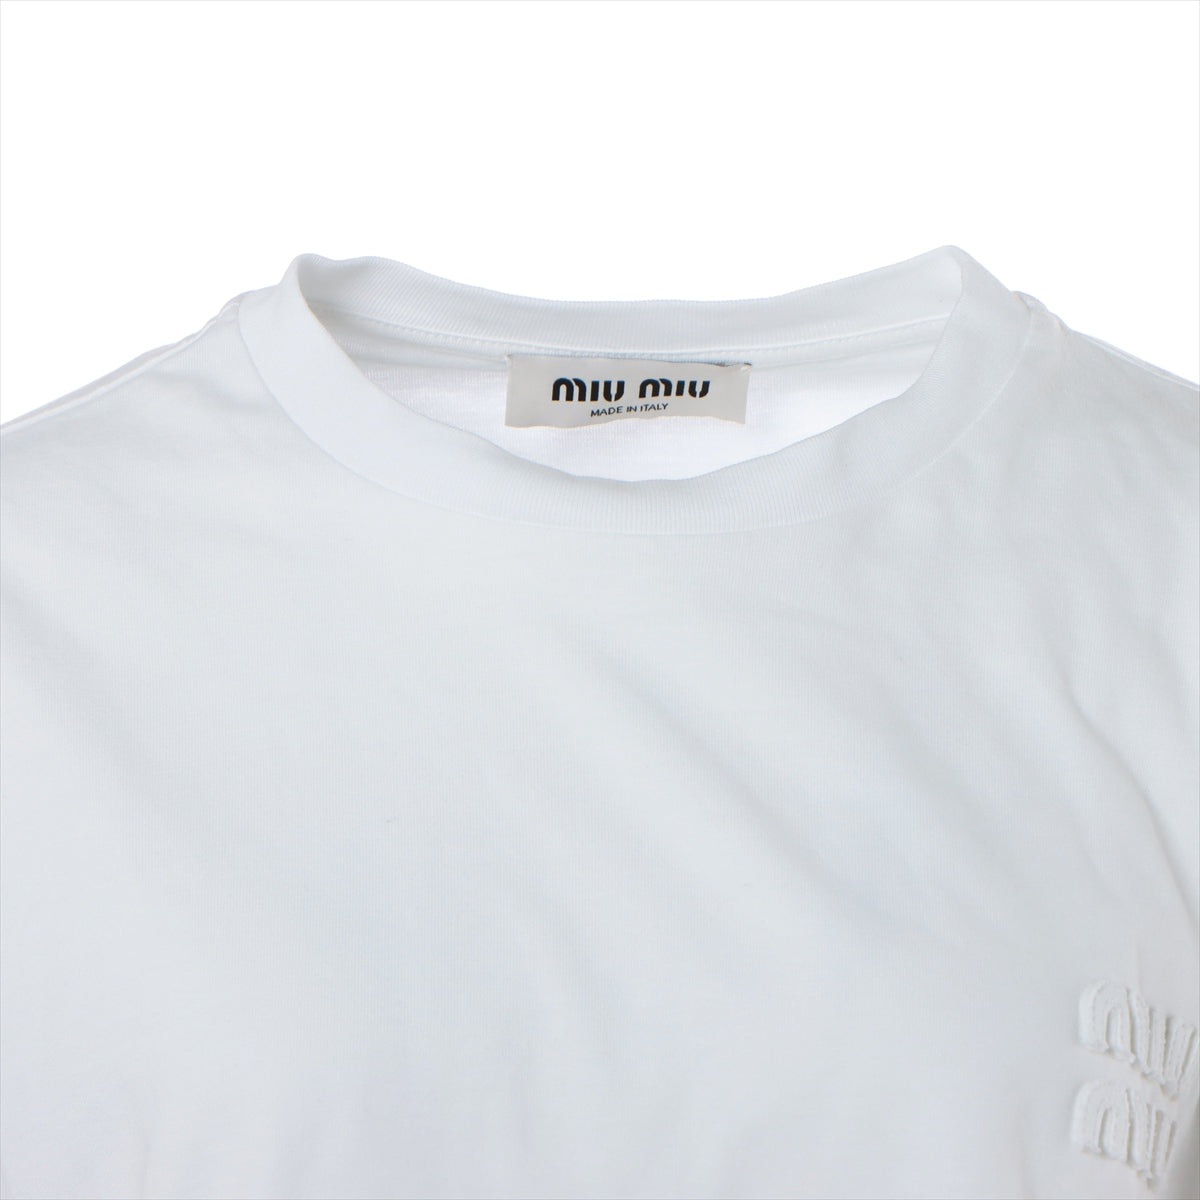 ミュウミュウ バックロゴクルーネックTシャツ カットソー 半袖 MJN223